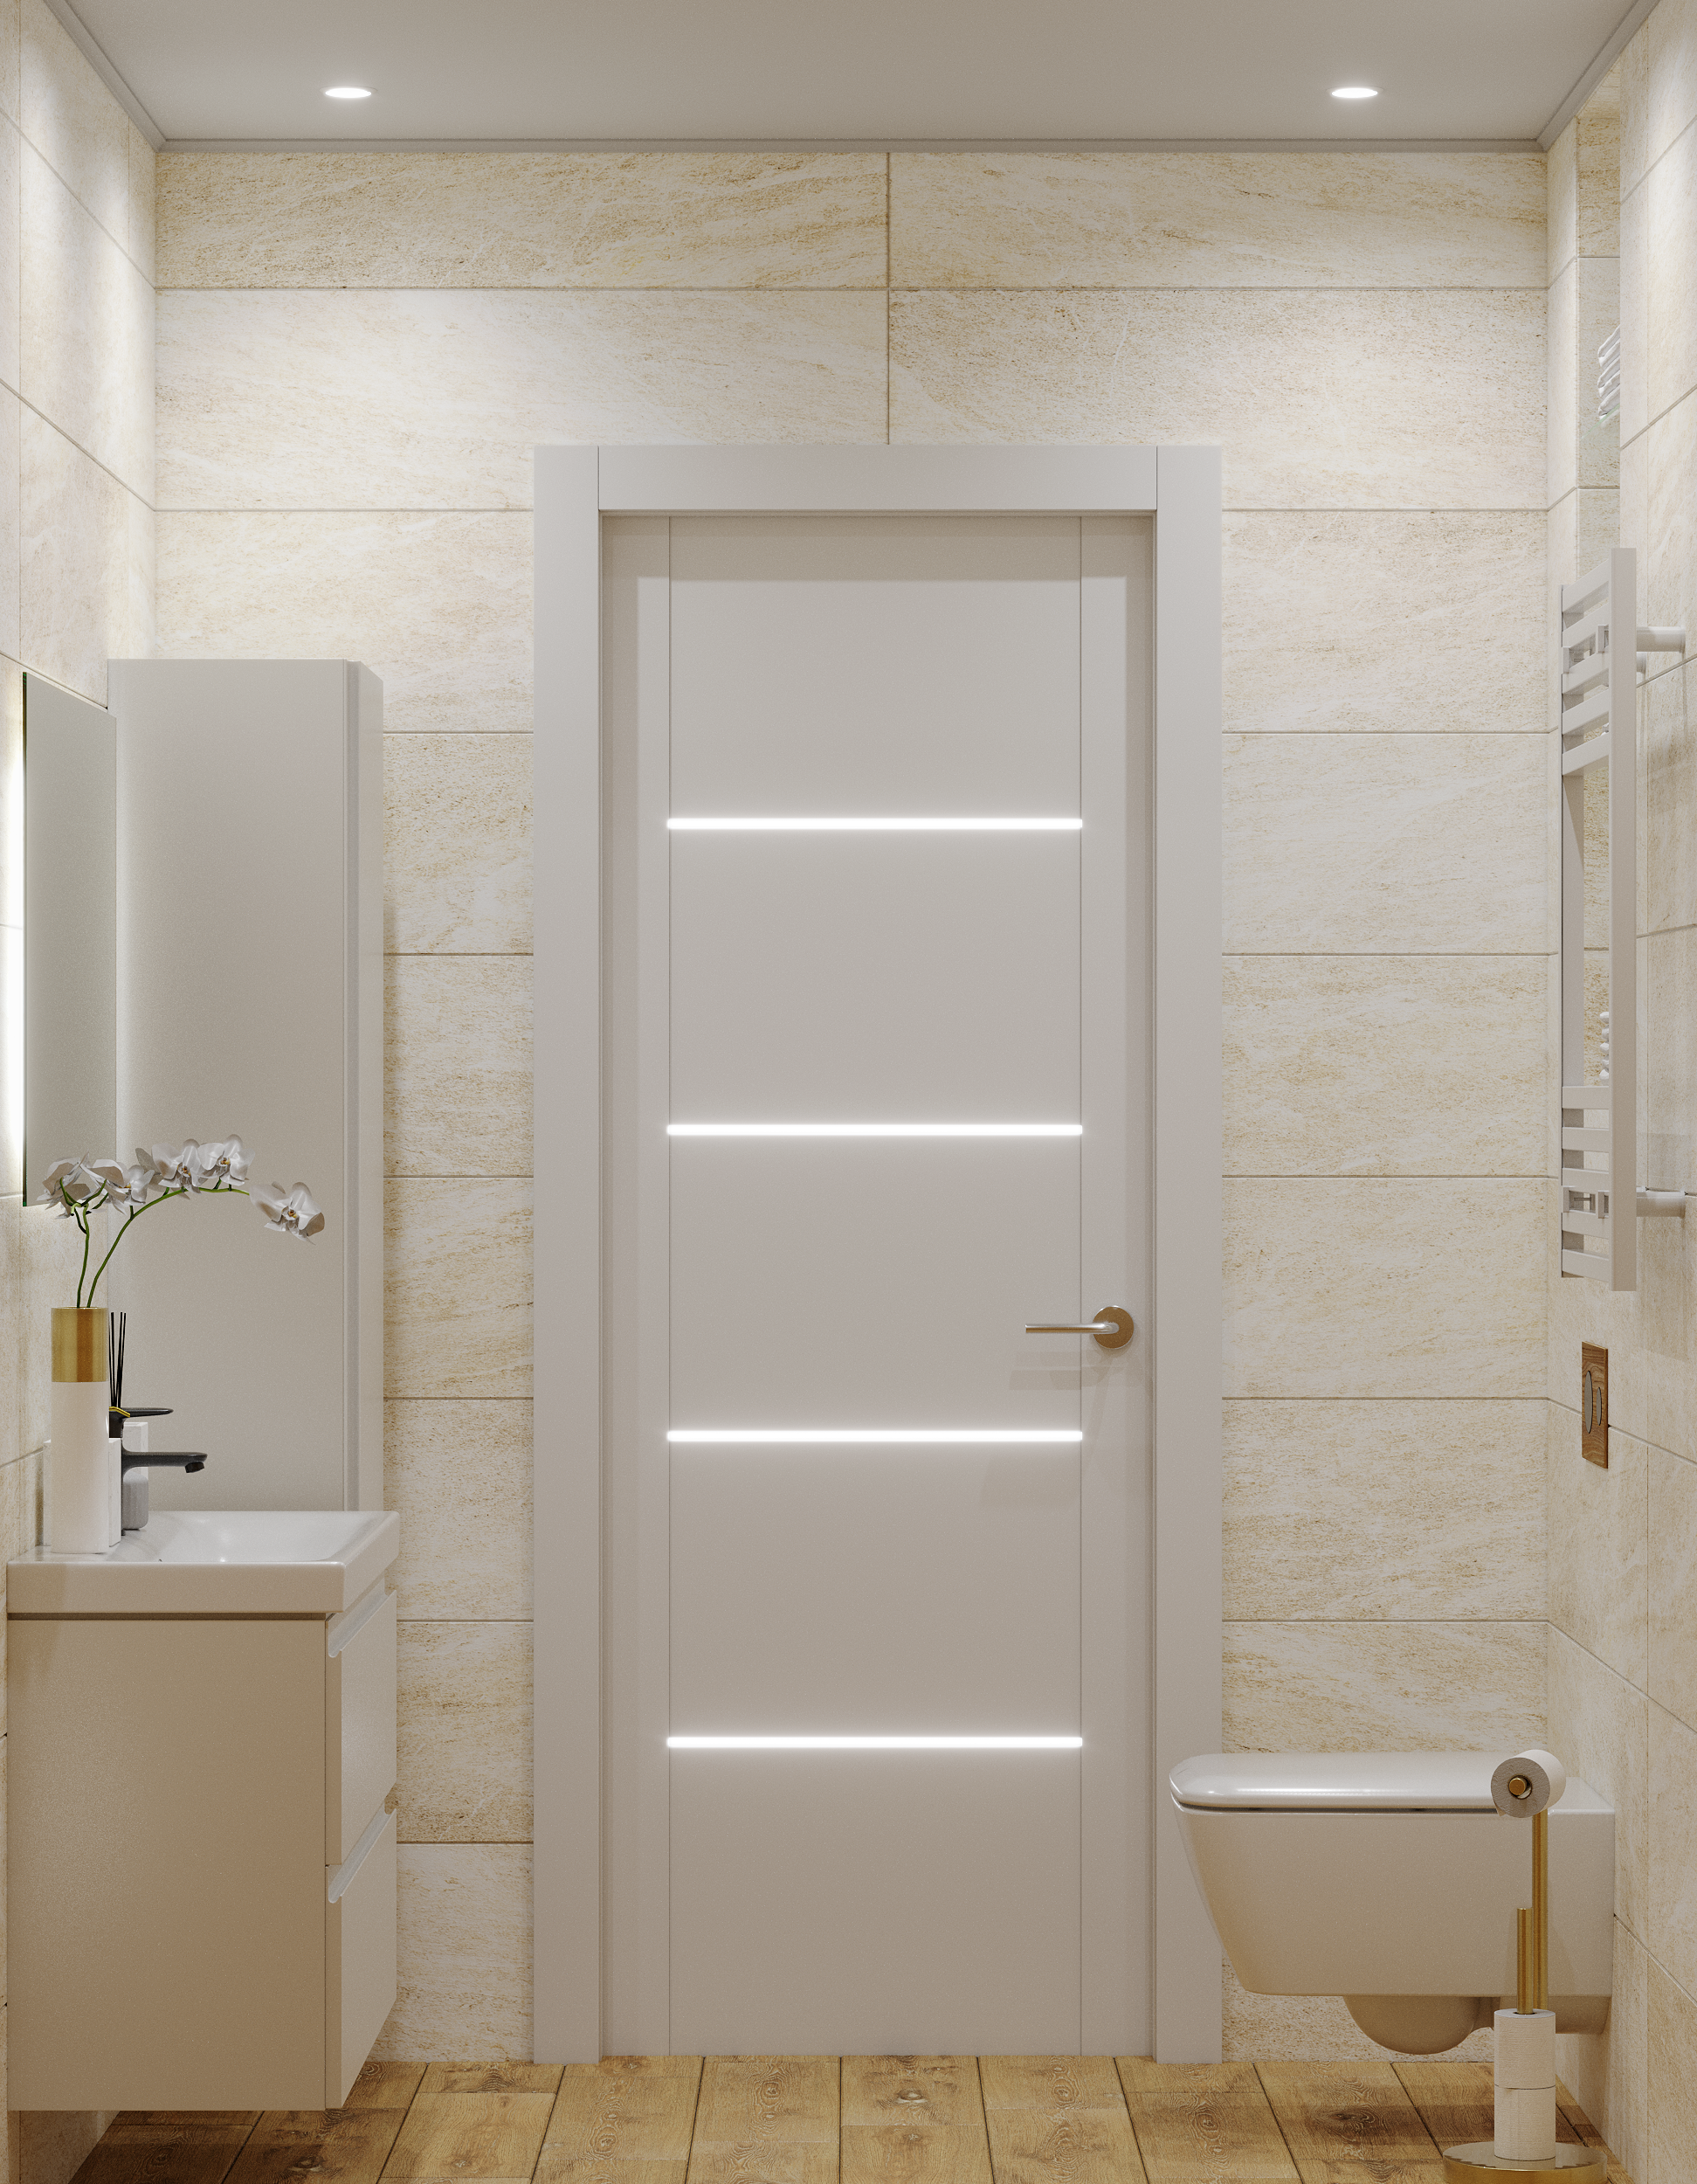 Интерьер ванной с подсветкой настенной, подсветкой светодиодной и с подсветкой